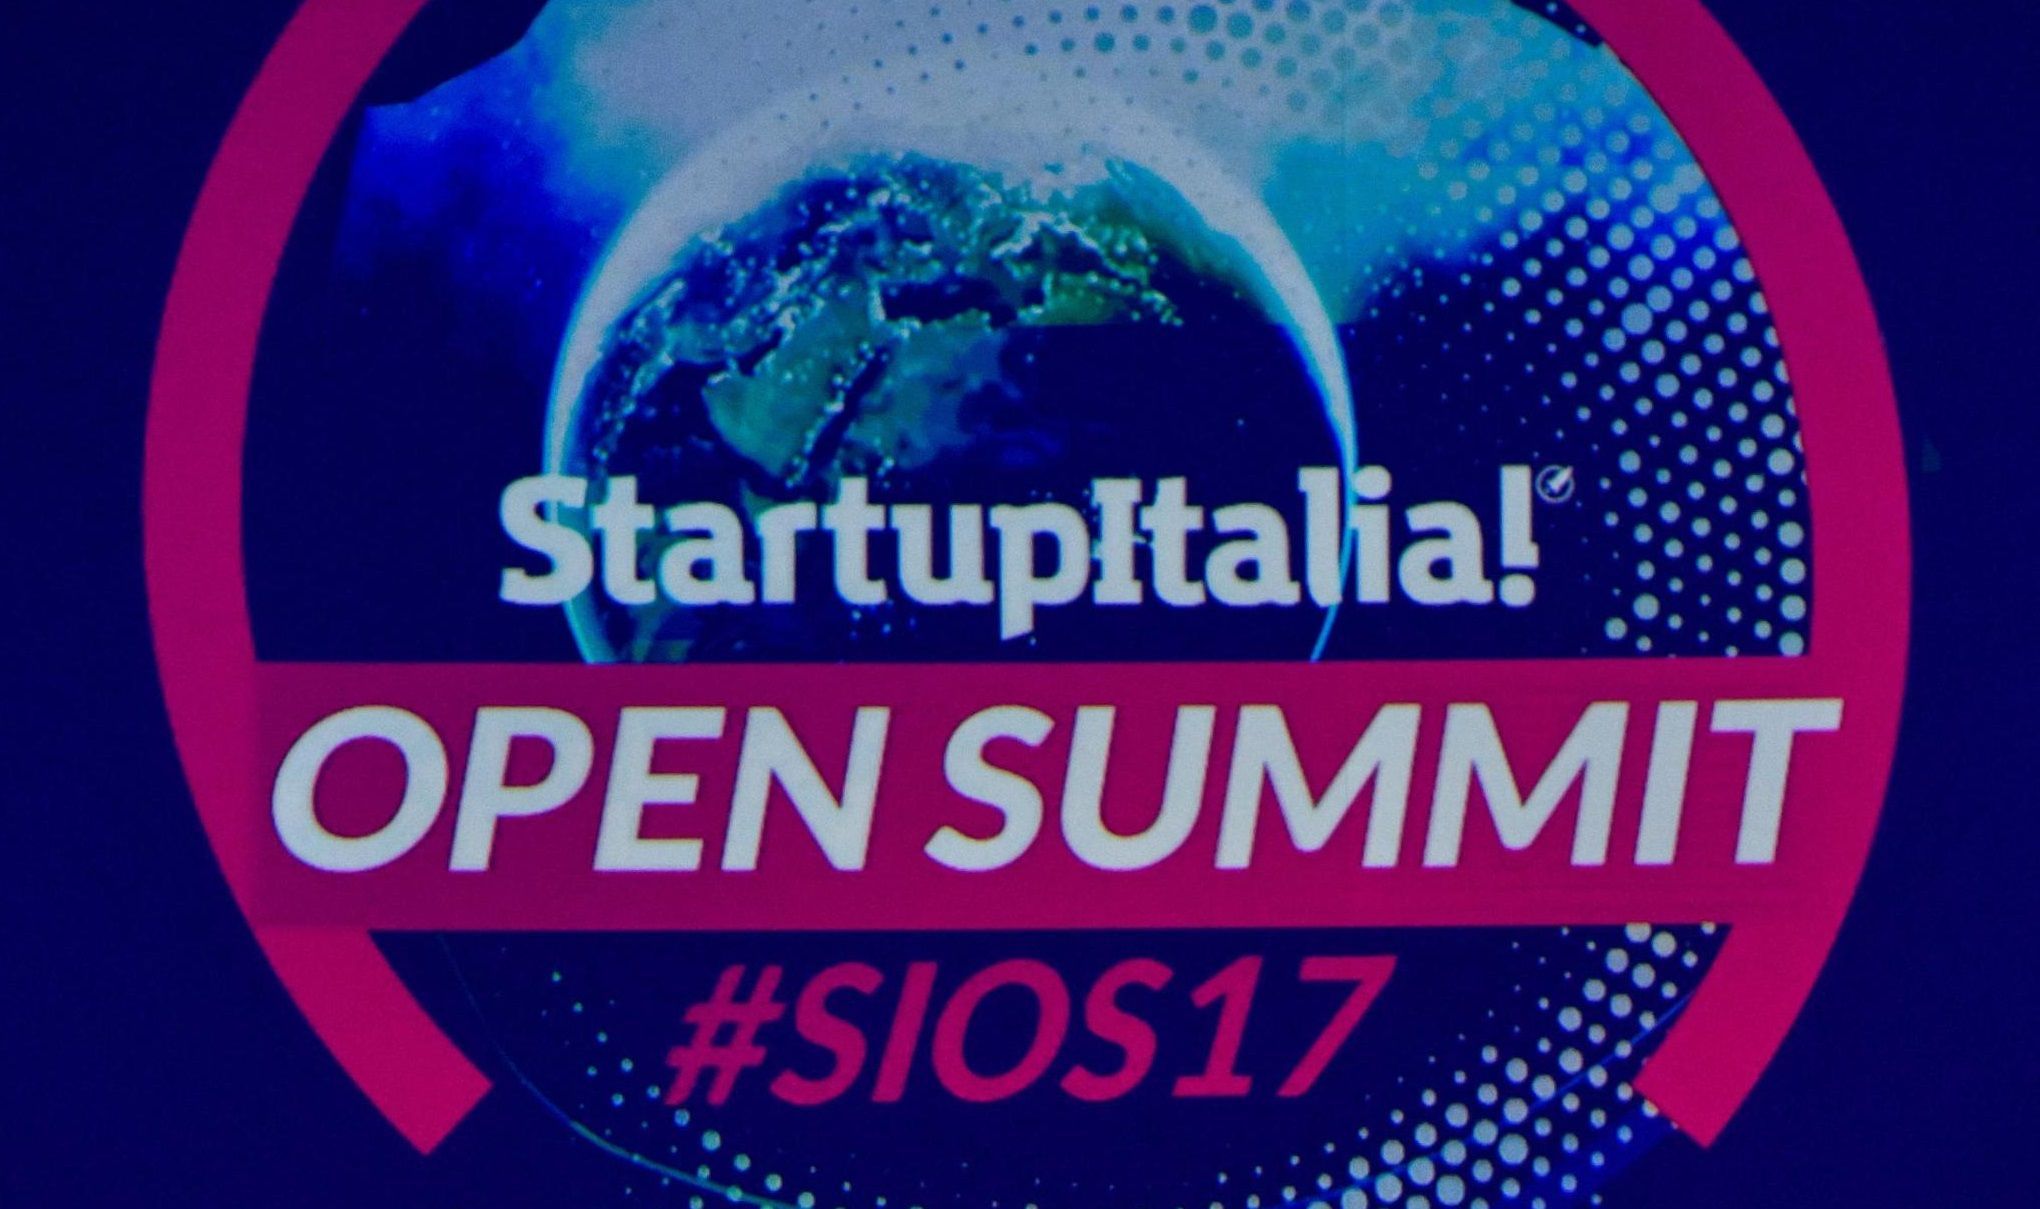 StartupItalia! Open Summit